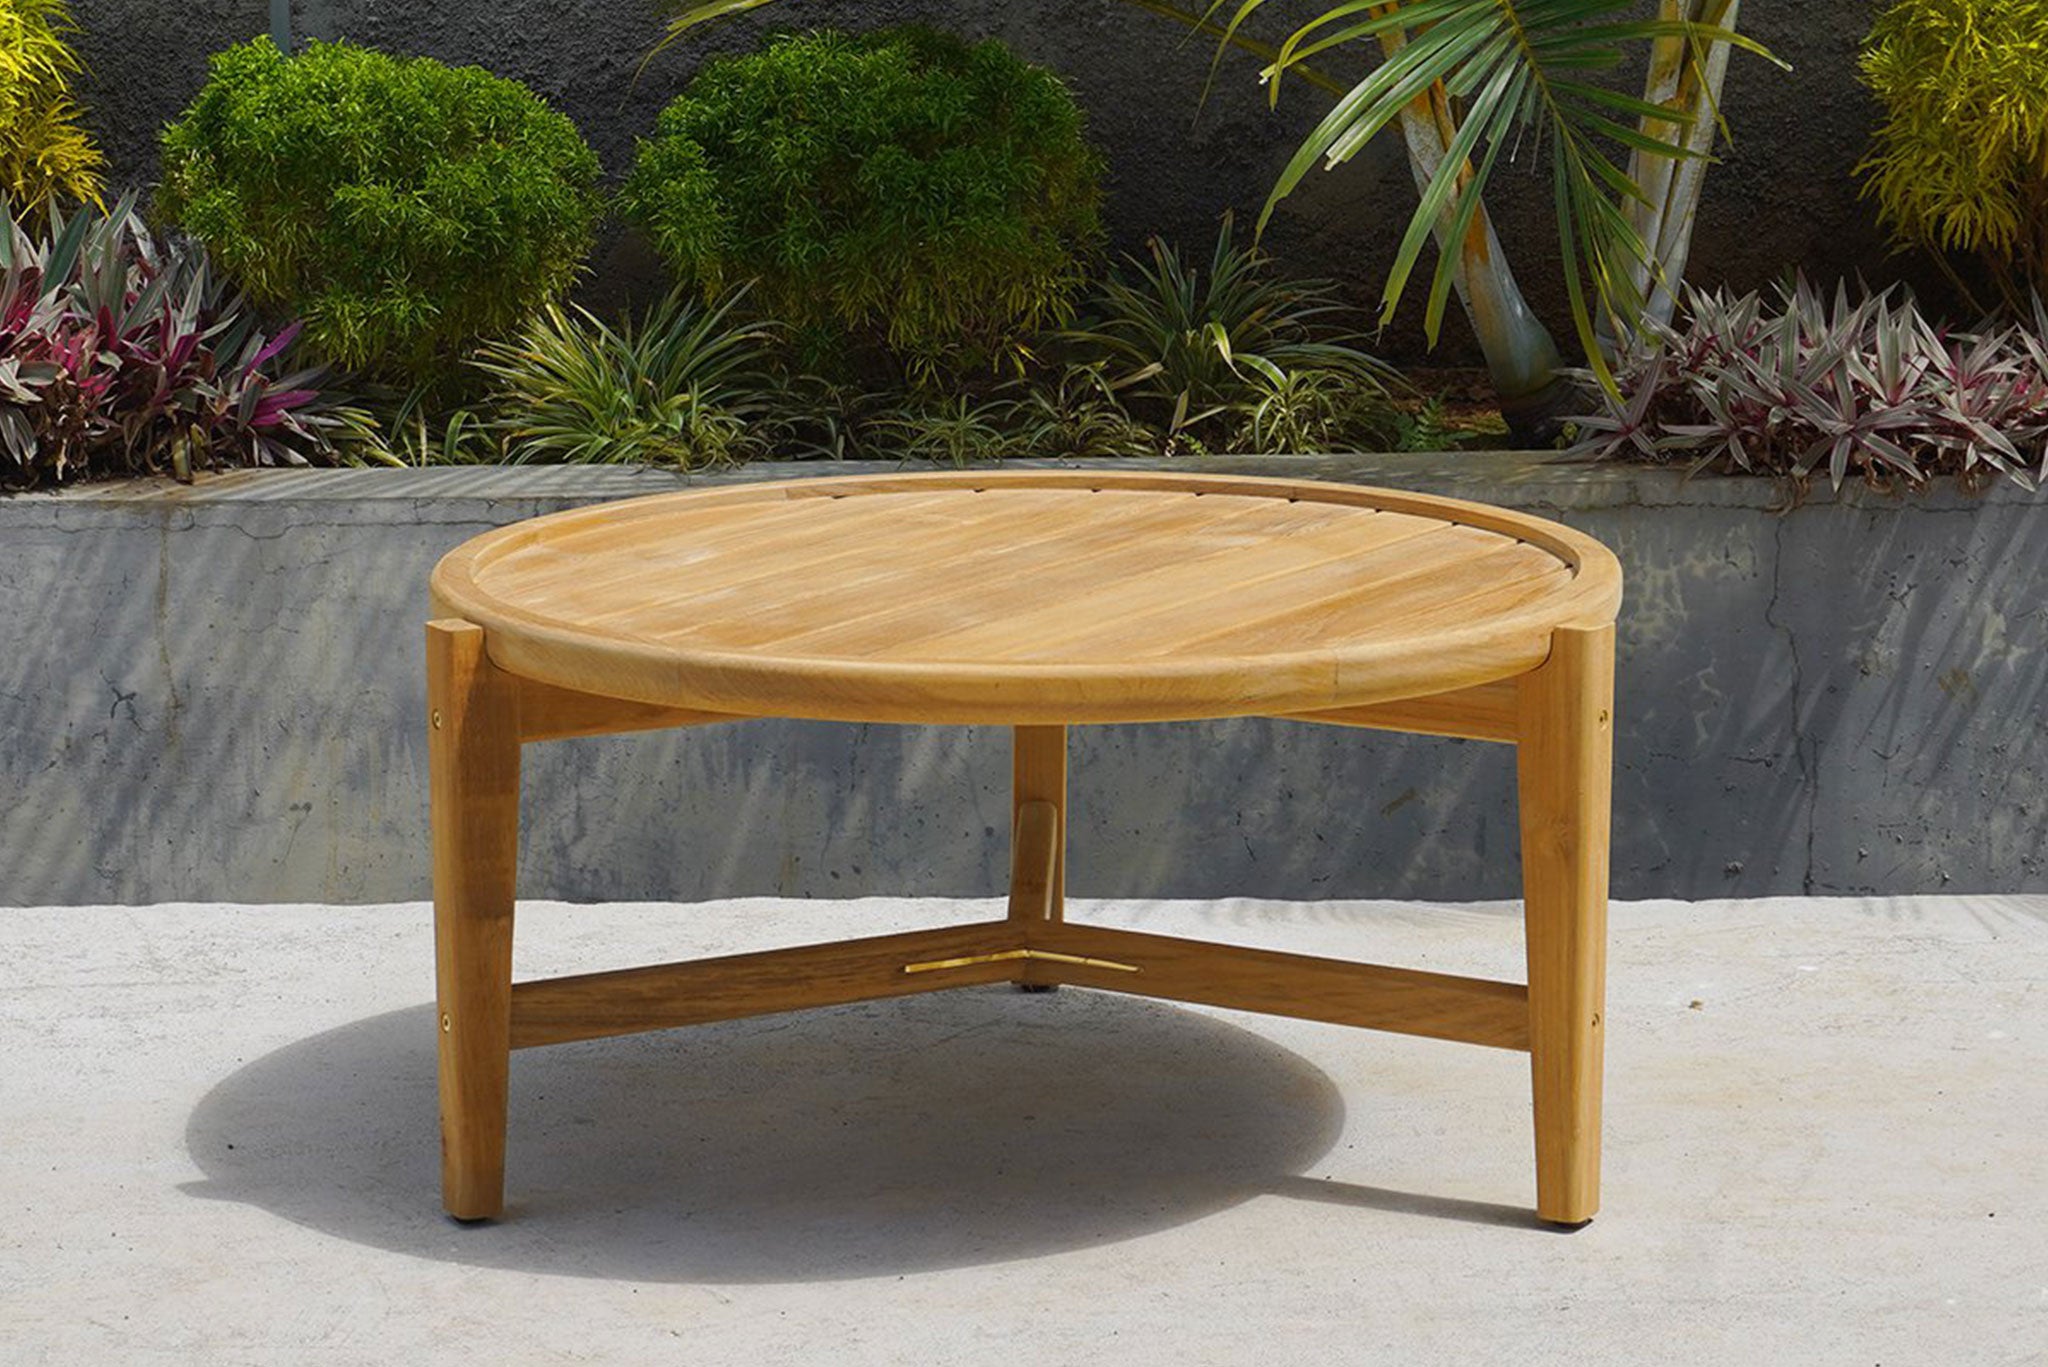 Queenscliff Teak Outdoor Round Coffee Table – 80cm